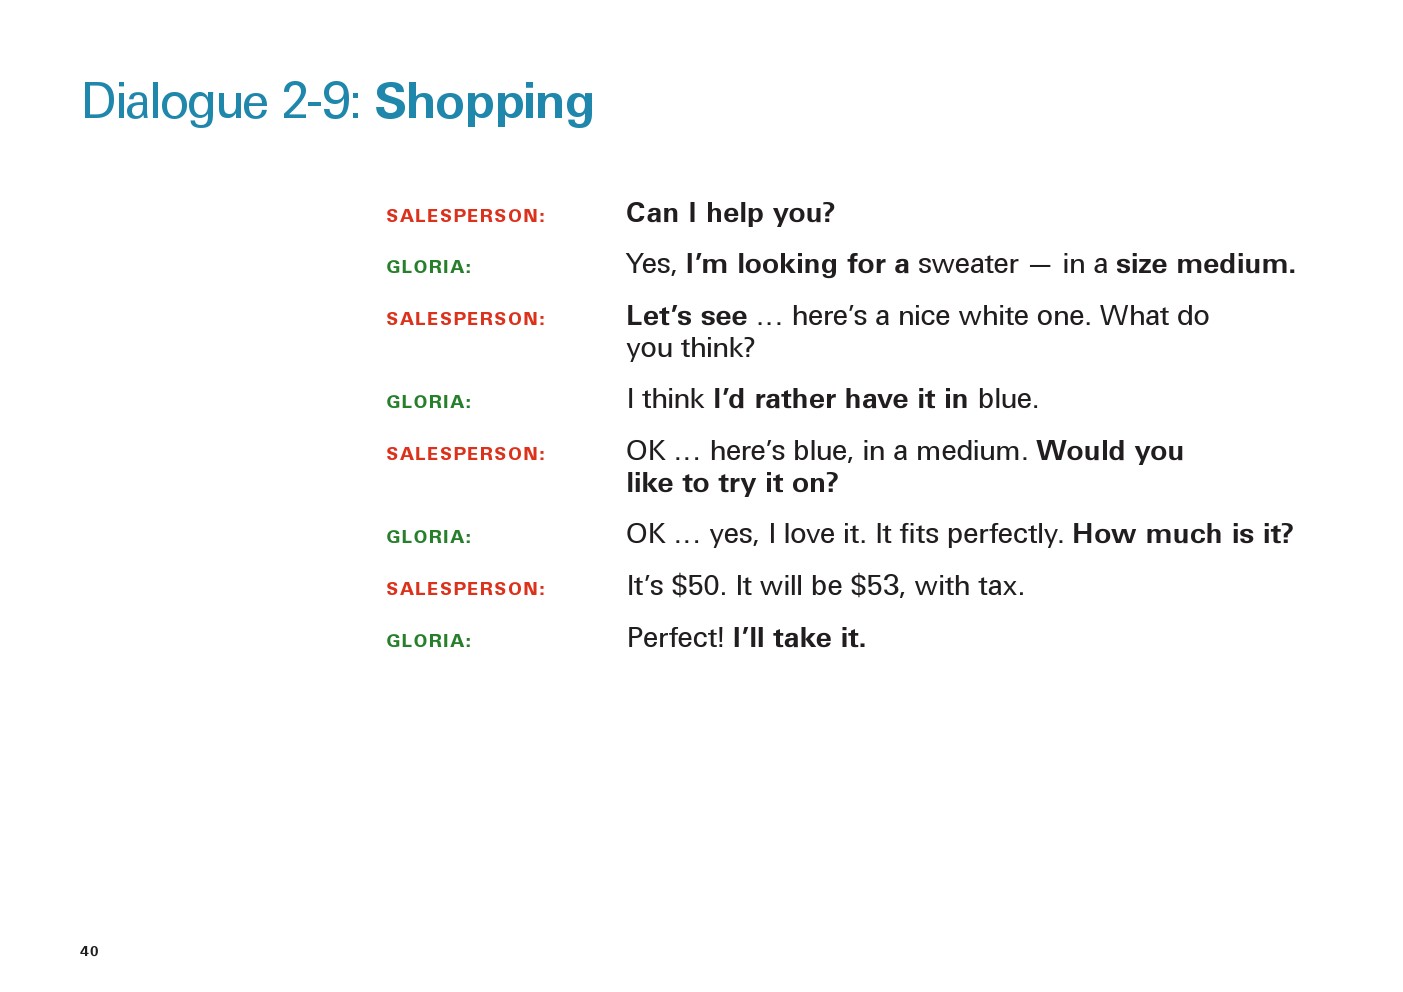 یادگیری انگلیسی آمریکایی-مکالمات و دیالوگ های روزمره- مکالمه 9-2: خرید کردن(Dialogue 2-9: Shopping)